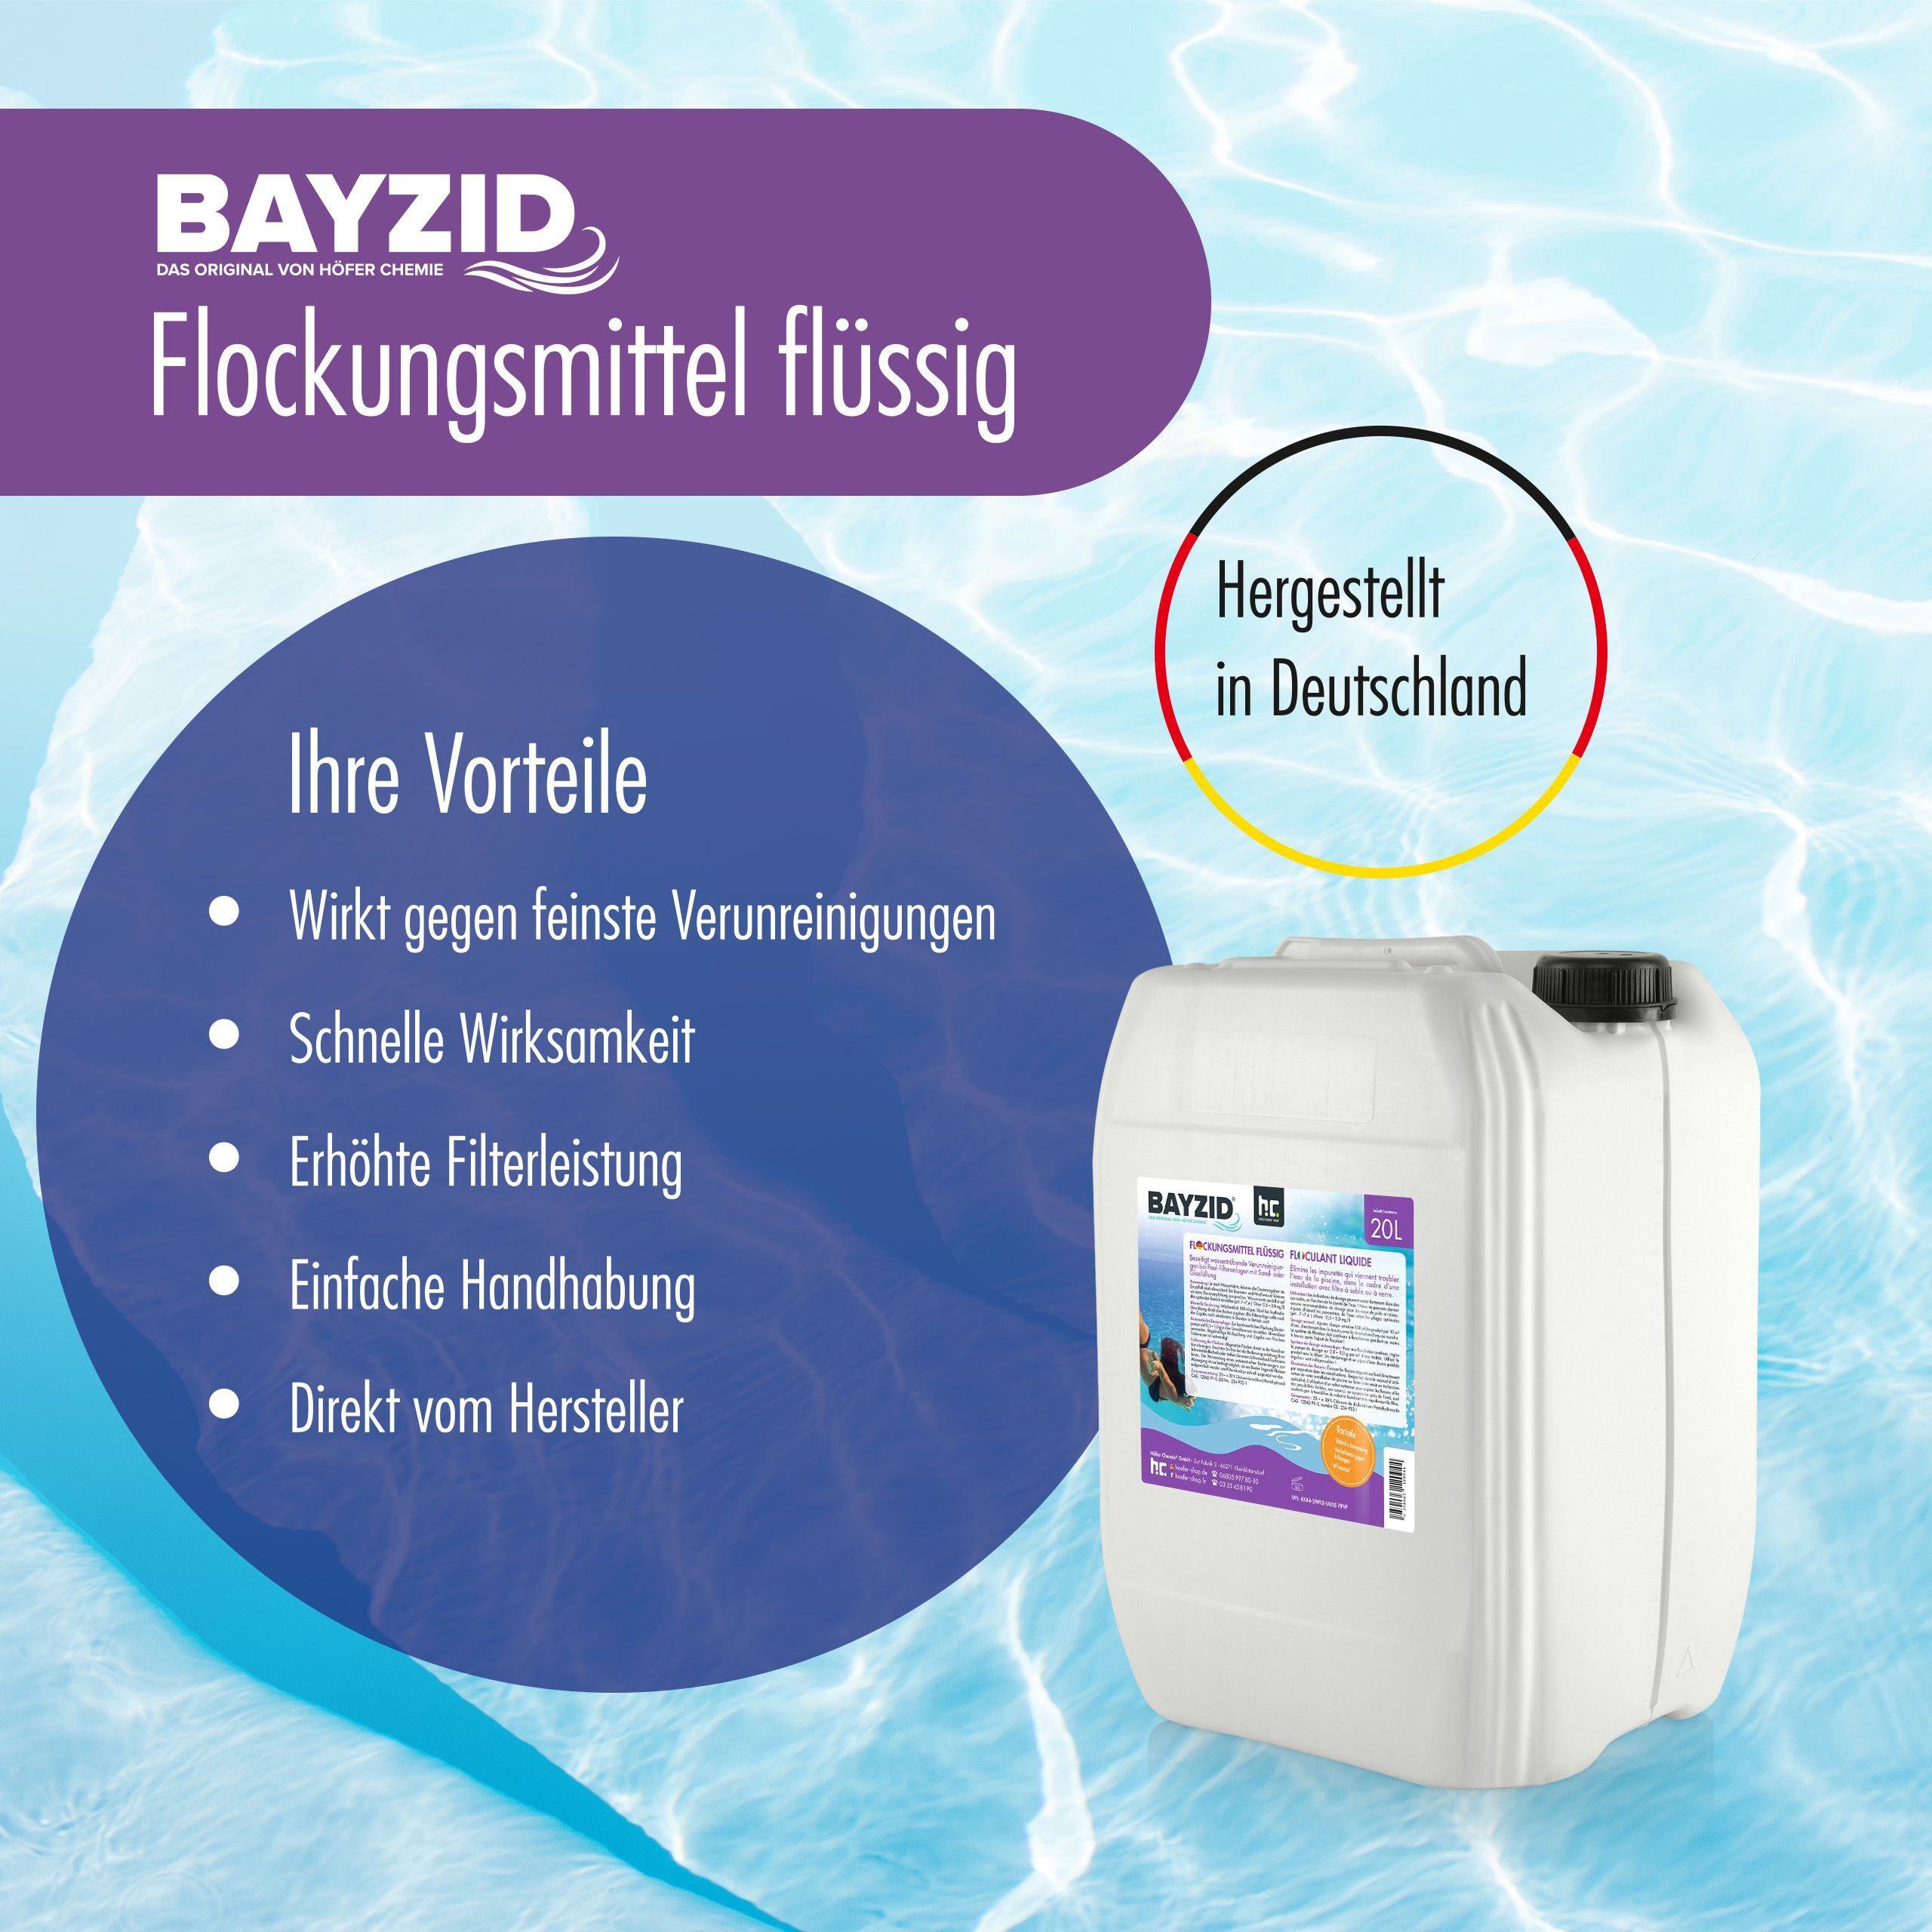 5 L BAYZID® Floculant liquide pour piscines